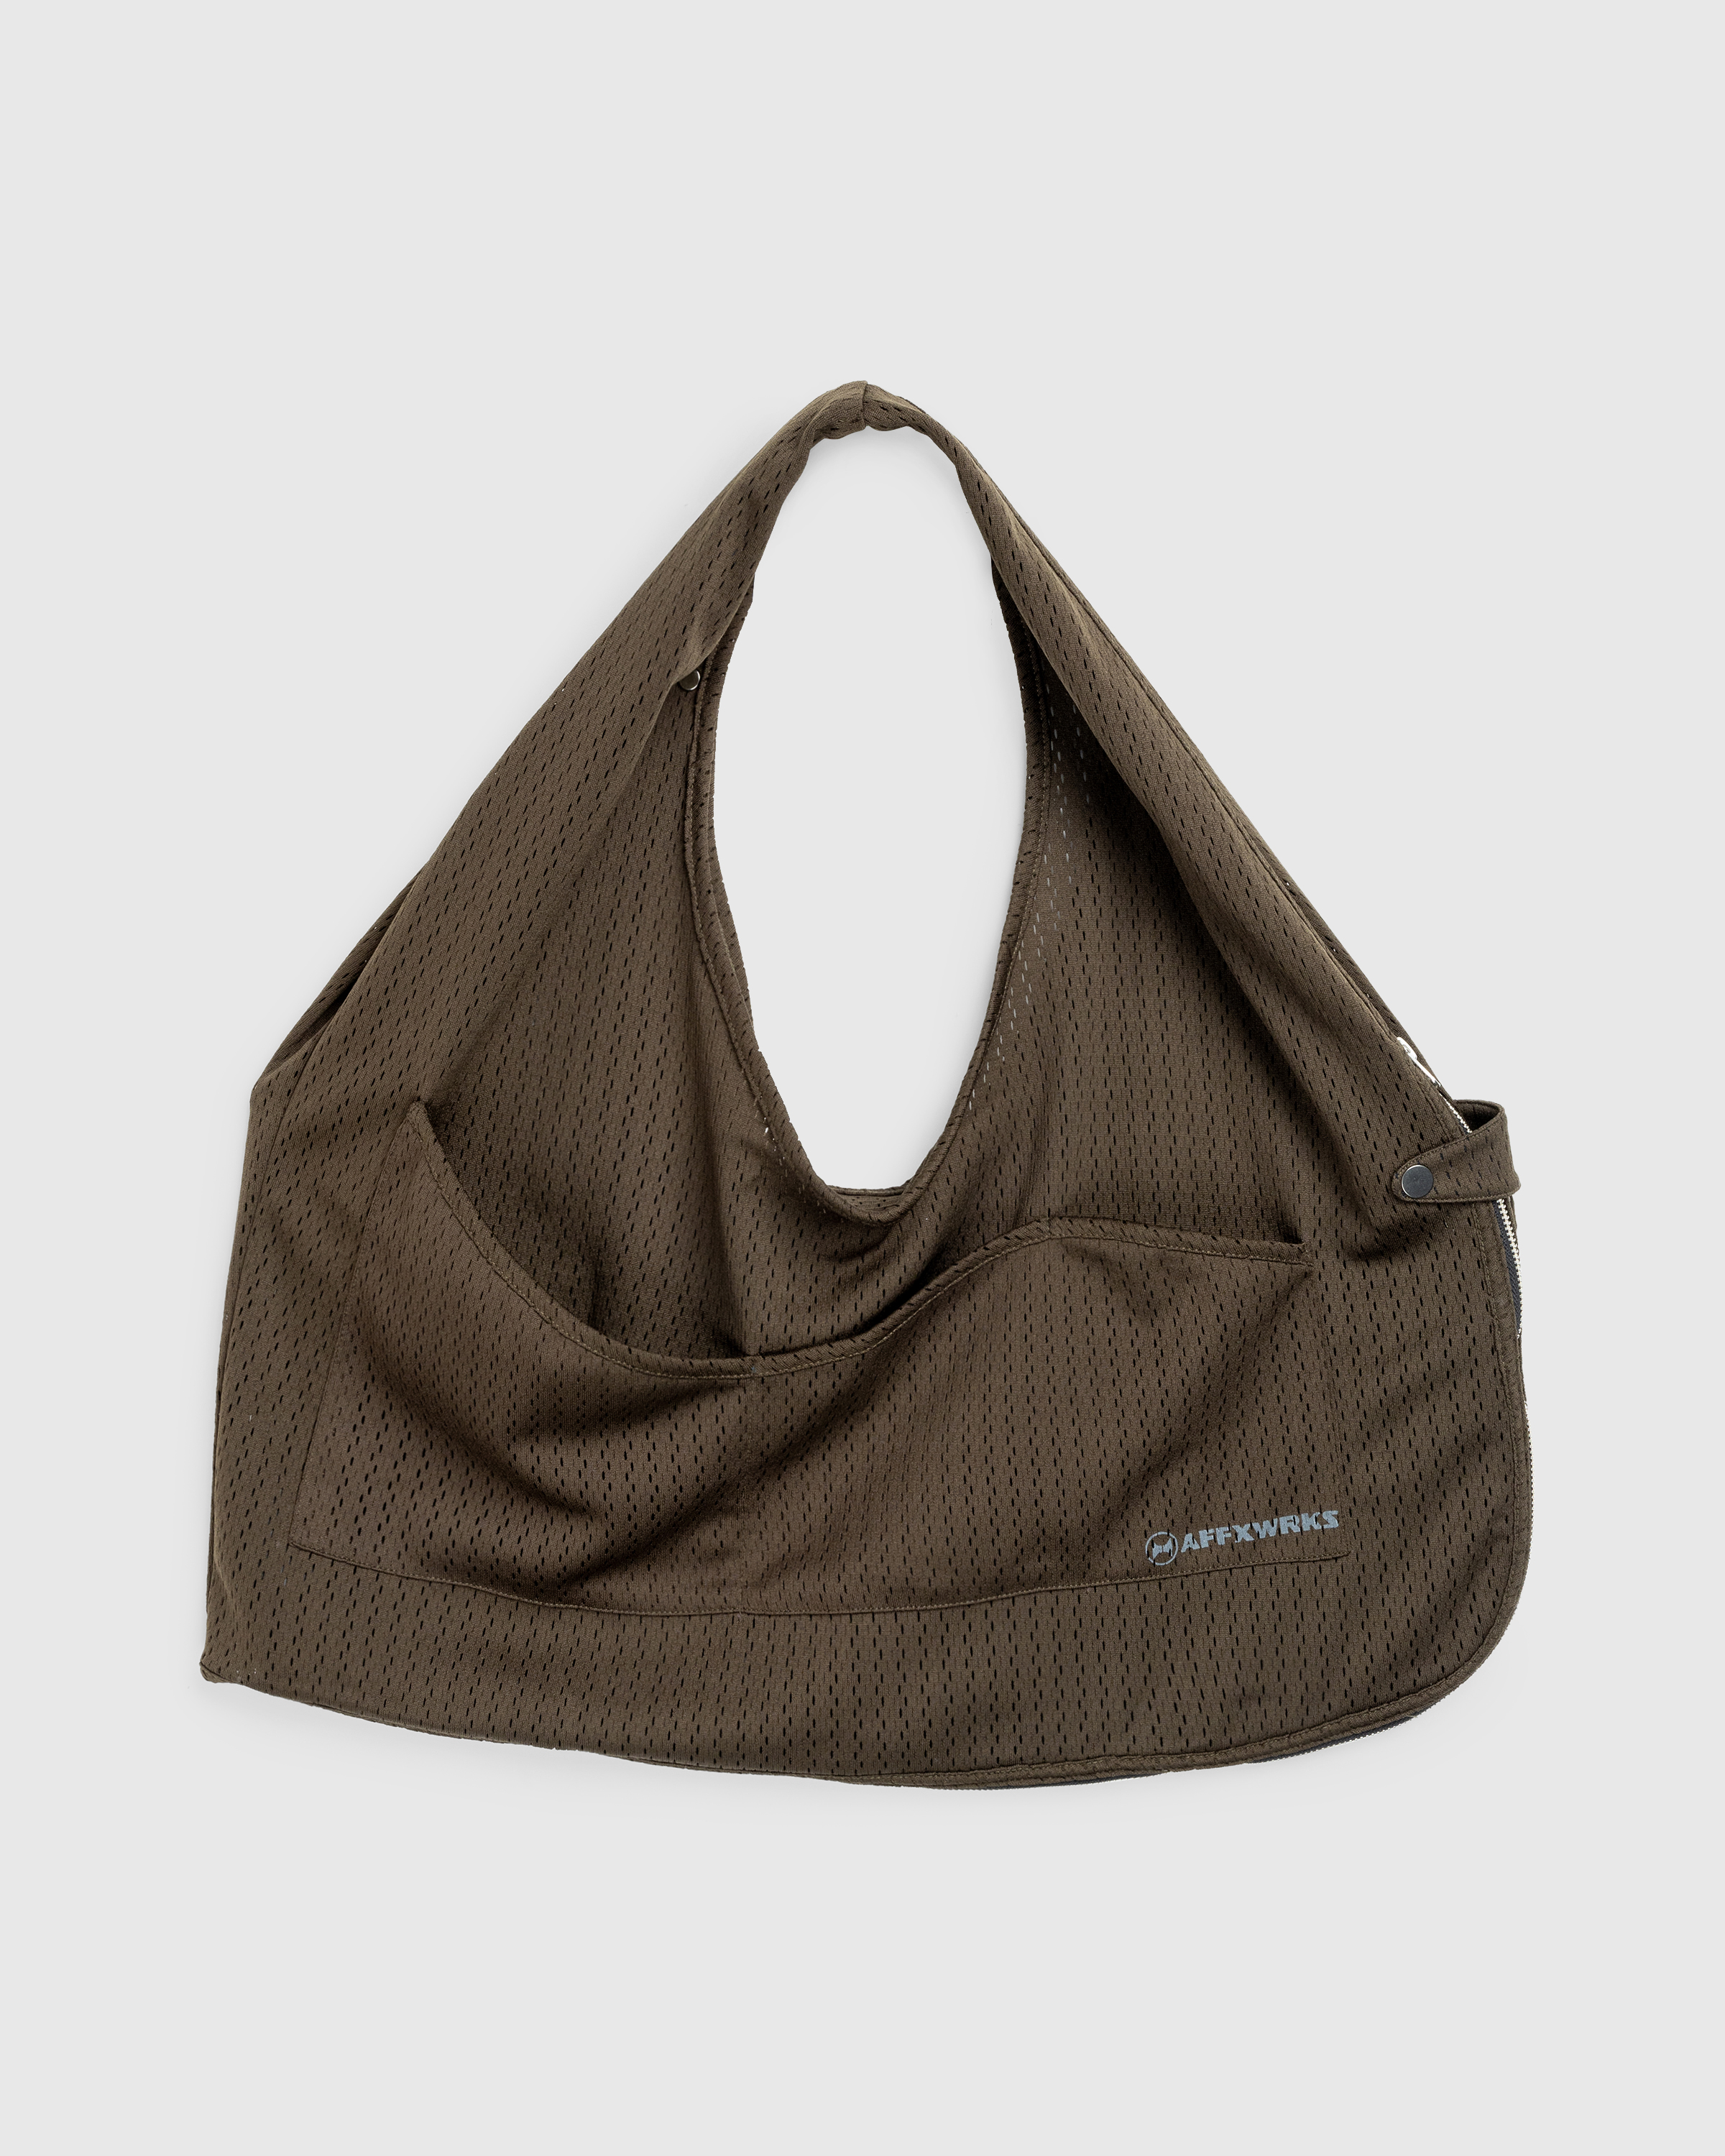 AFFXWRKS – Bag Vest Olive Drab - Vests - Green - Image 1